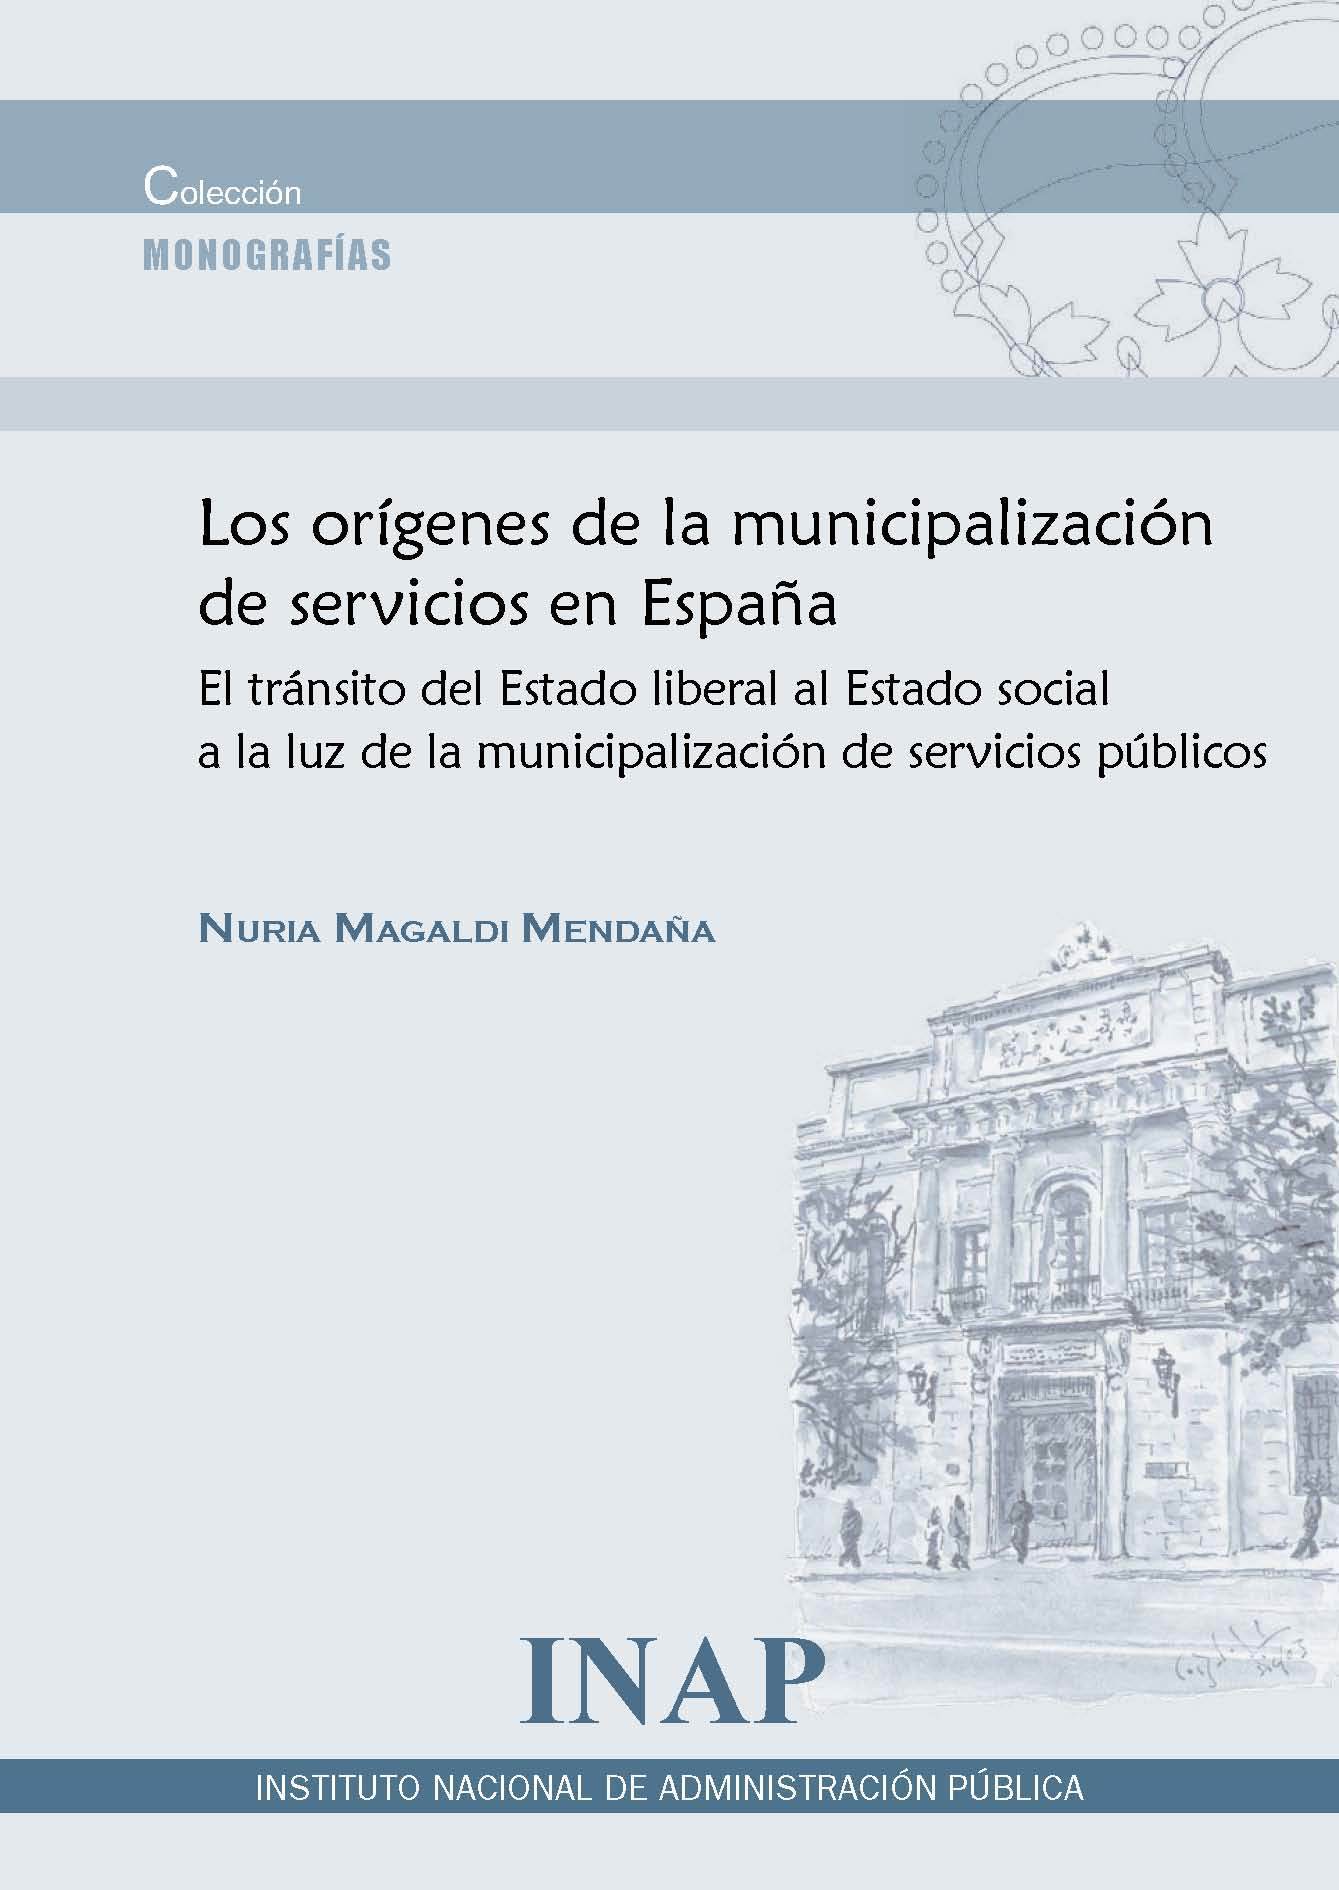 Los orígenes de la municipalización de servicios en España. Tránsito del Estado liberal al Estado social